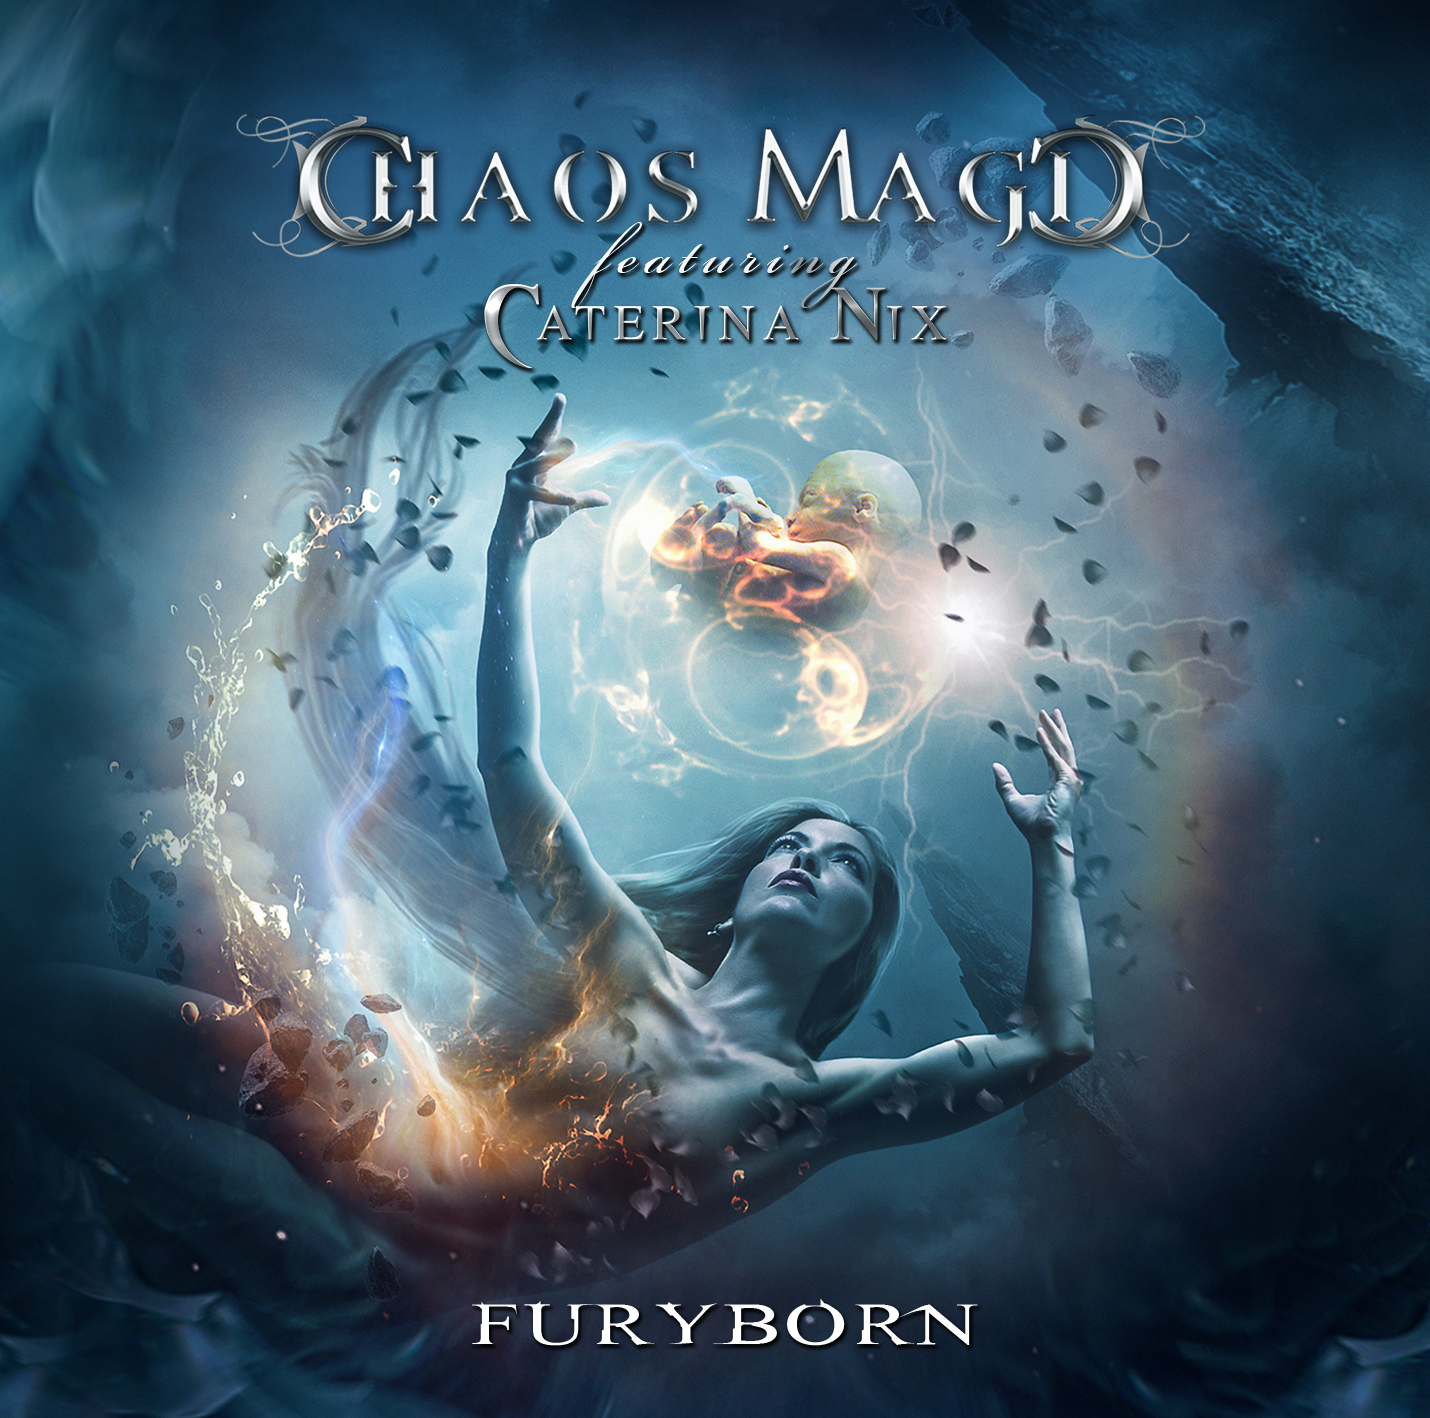 CHAOS MAGIC Feat. Caterina Nix - “Furyborn”